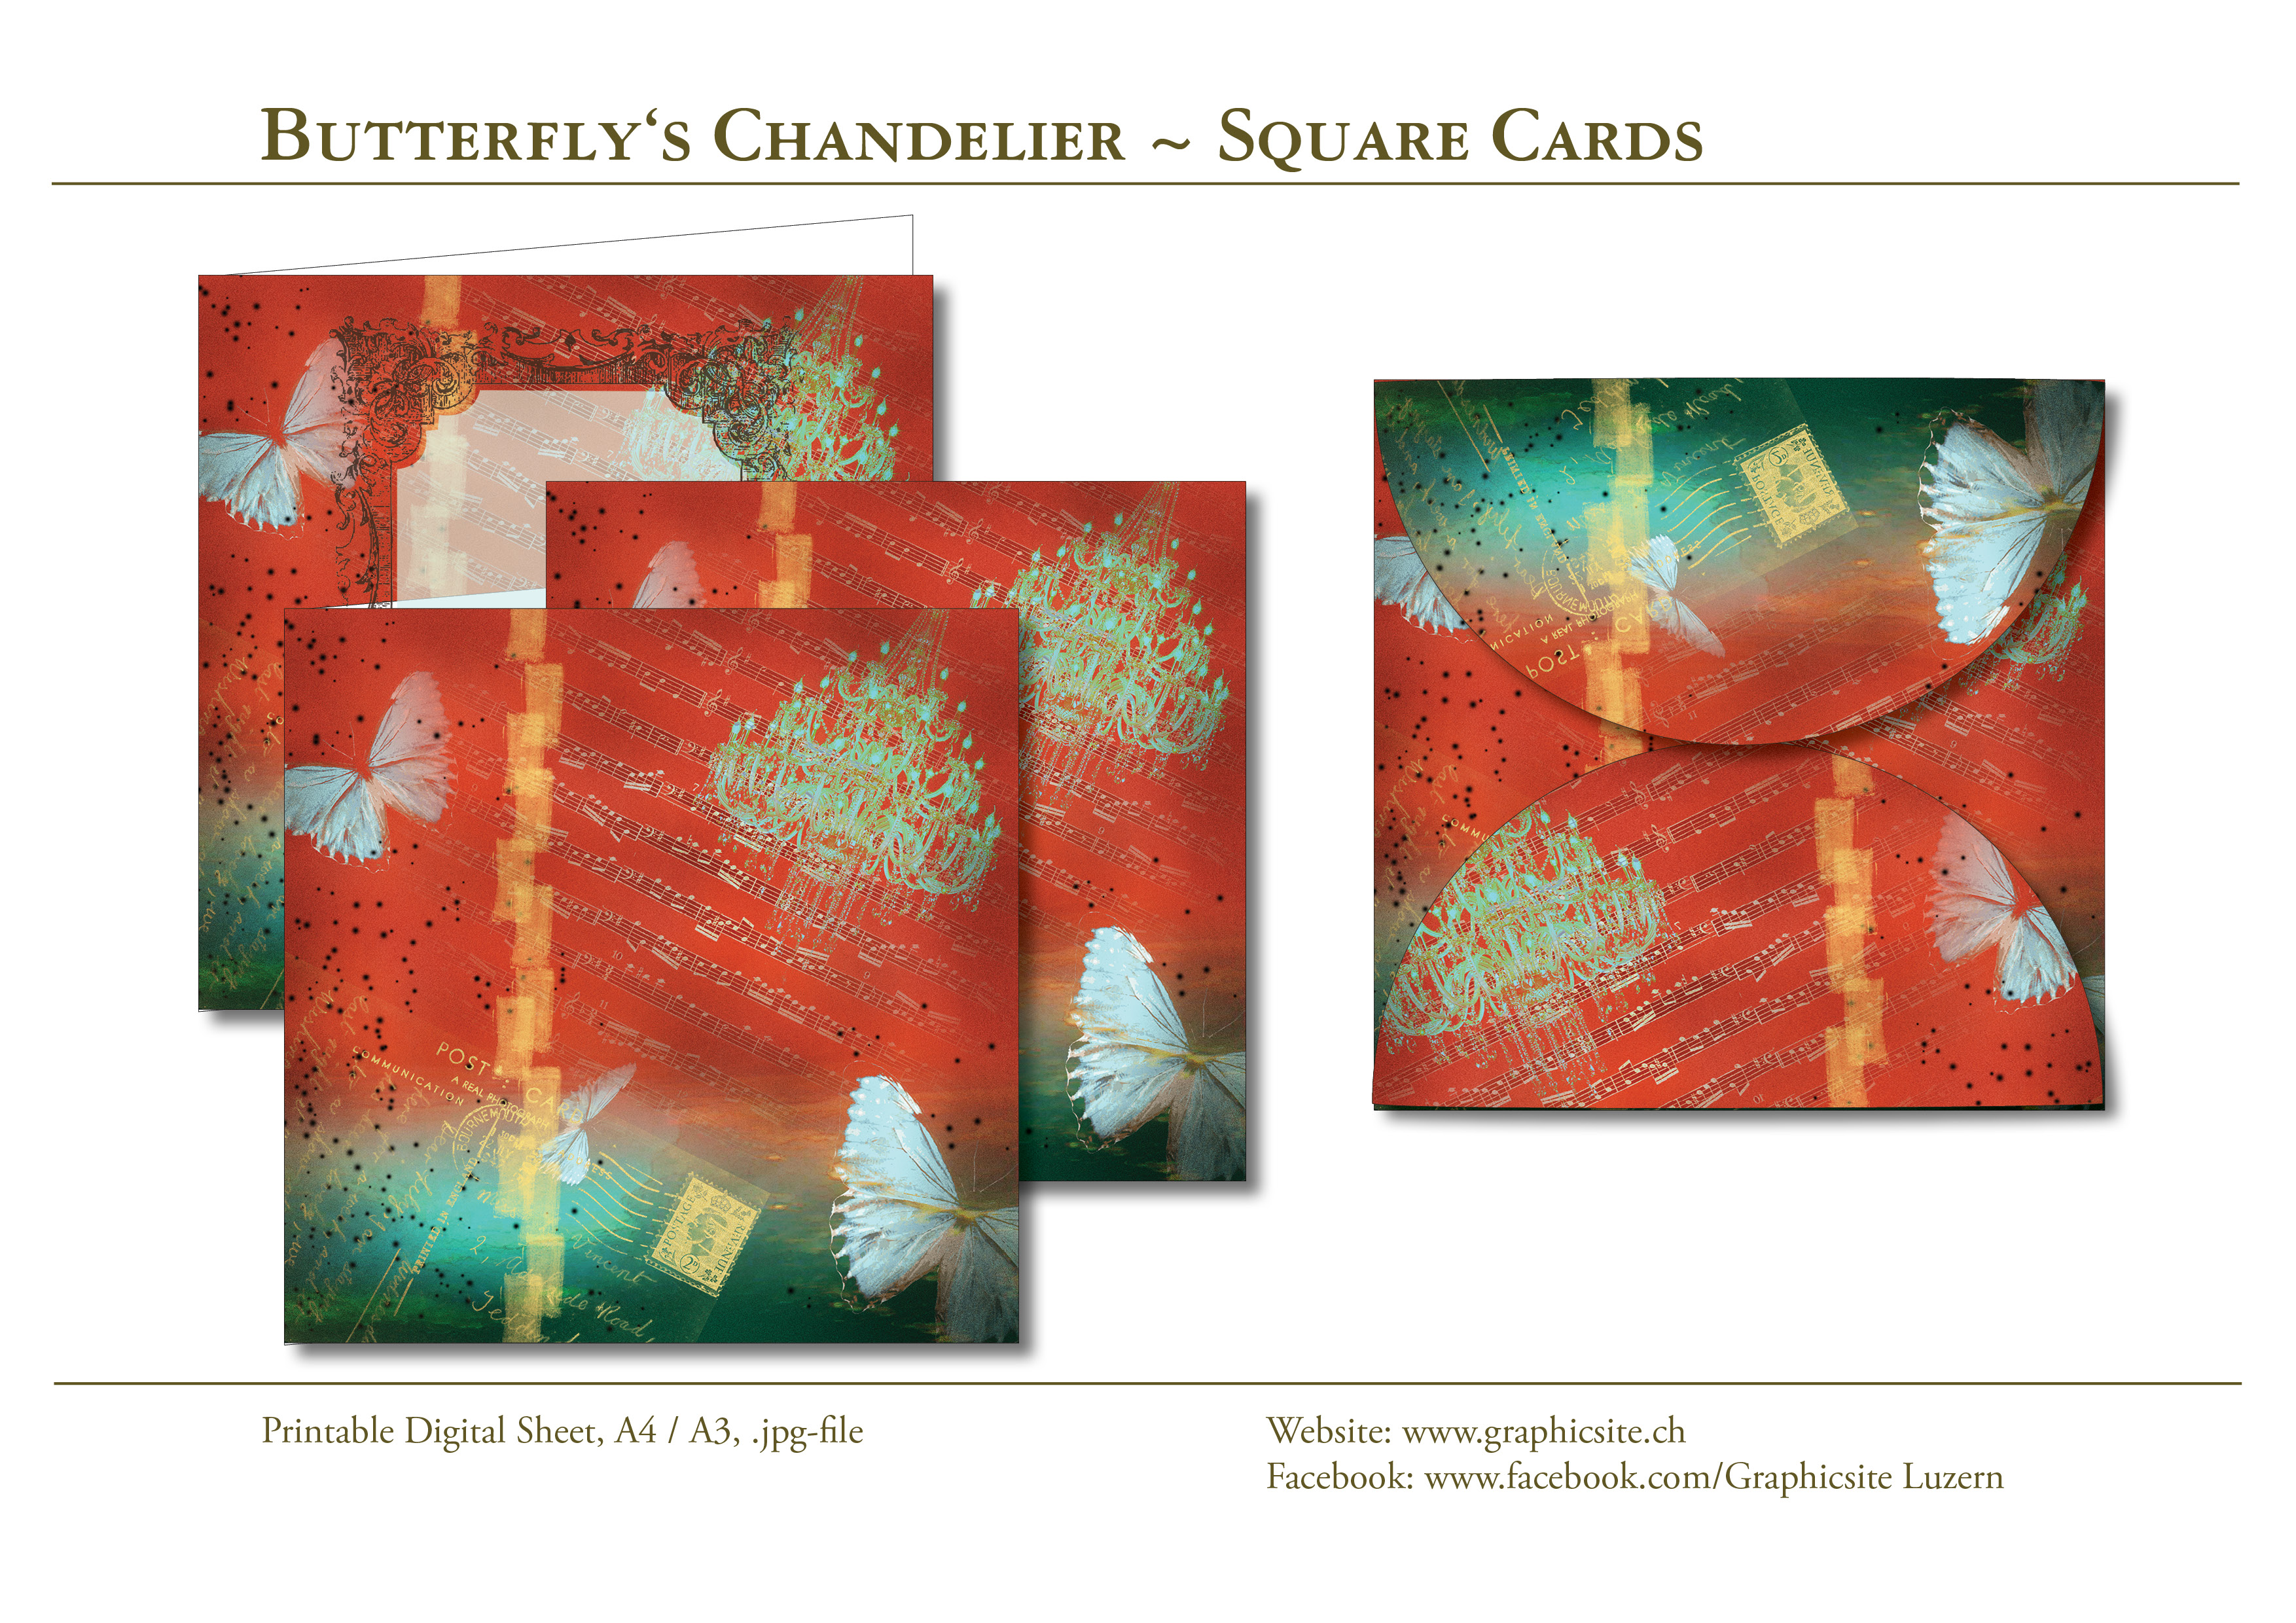 ButterflyChandelier - Kollektion - ArtJournaling - Square Cards, Envelope - Graphic Design Luzern, Schweiz